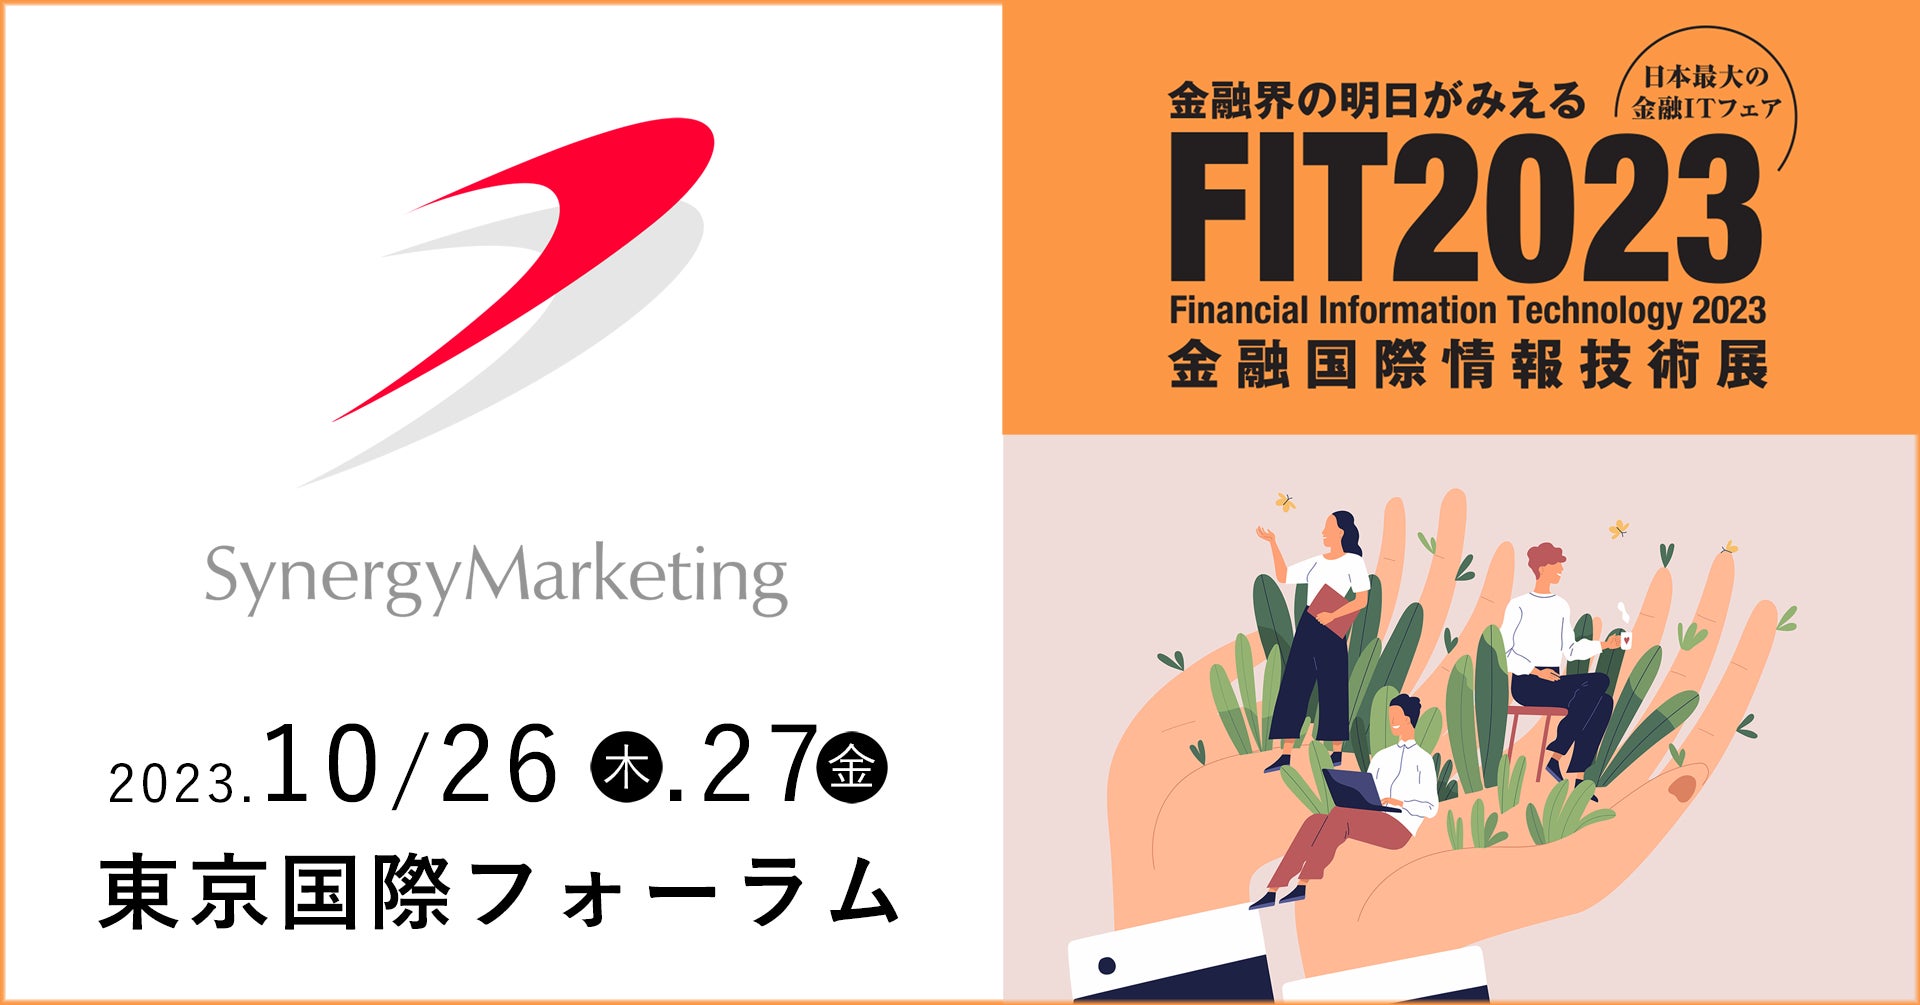 シナジーマーケティング、金融機関向け総合展示会「FIT2023」にブース出展